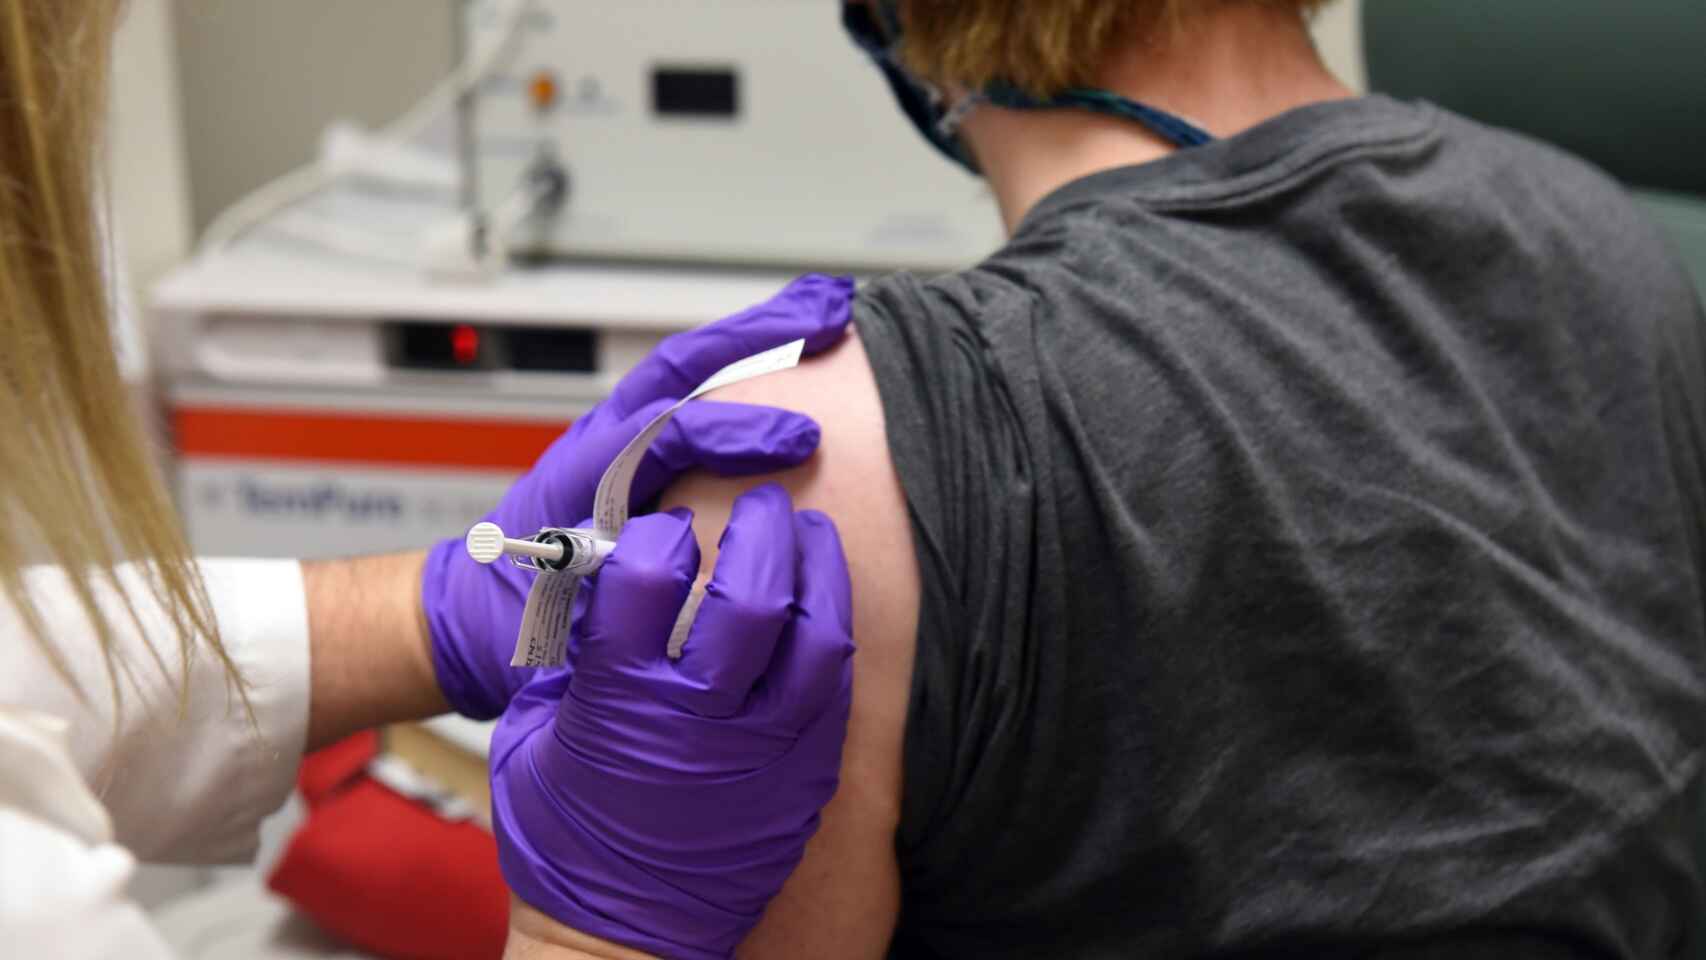 Oxford y AstraZeneca anuncian que su vacuna contra el COVID-19 tiene una eficacia de hasta 90%